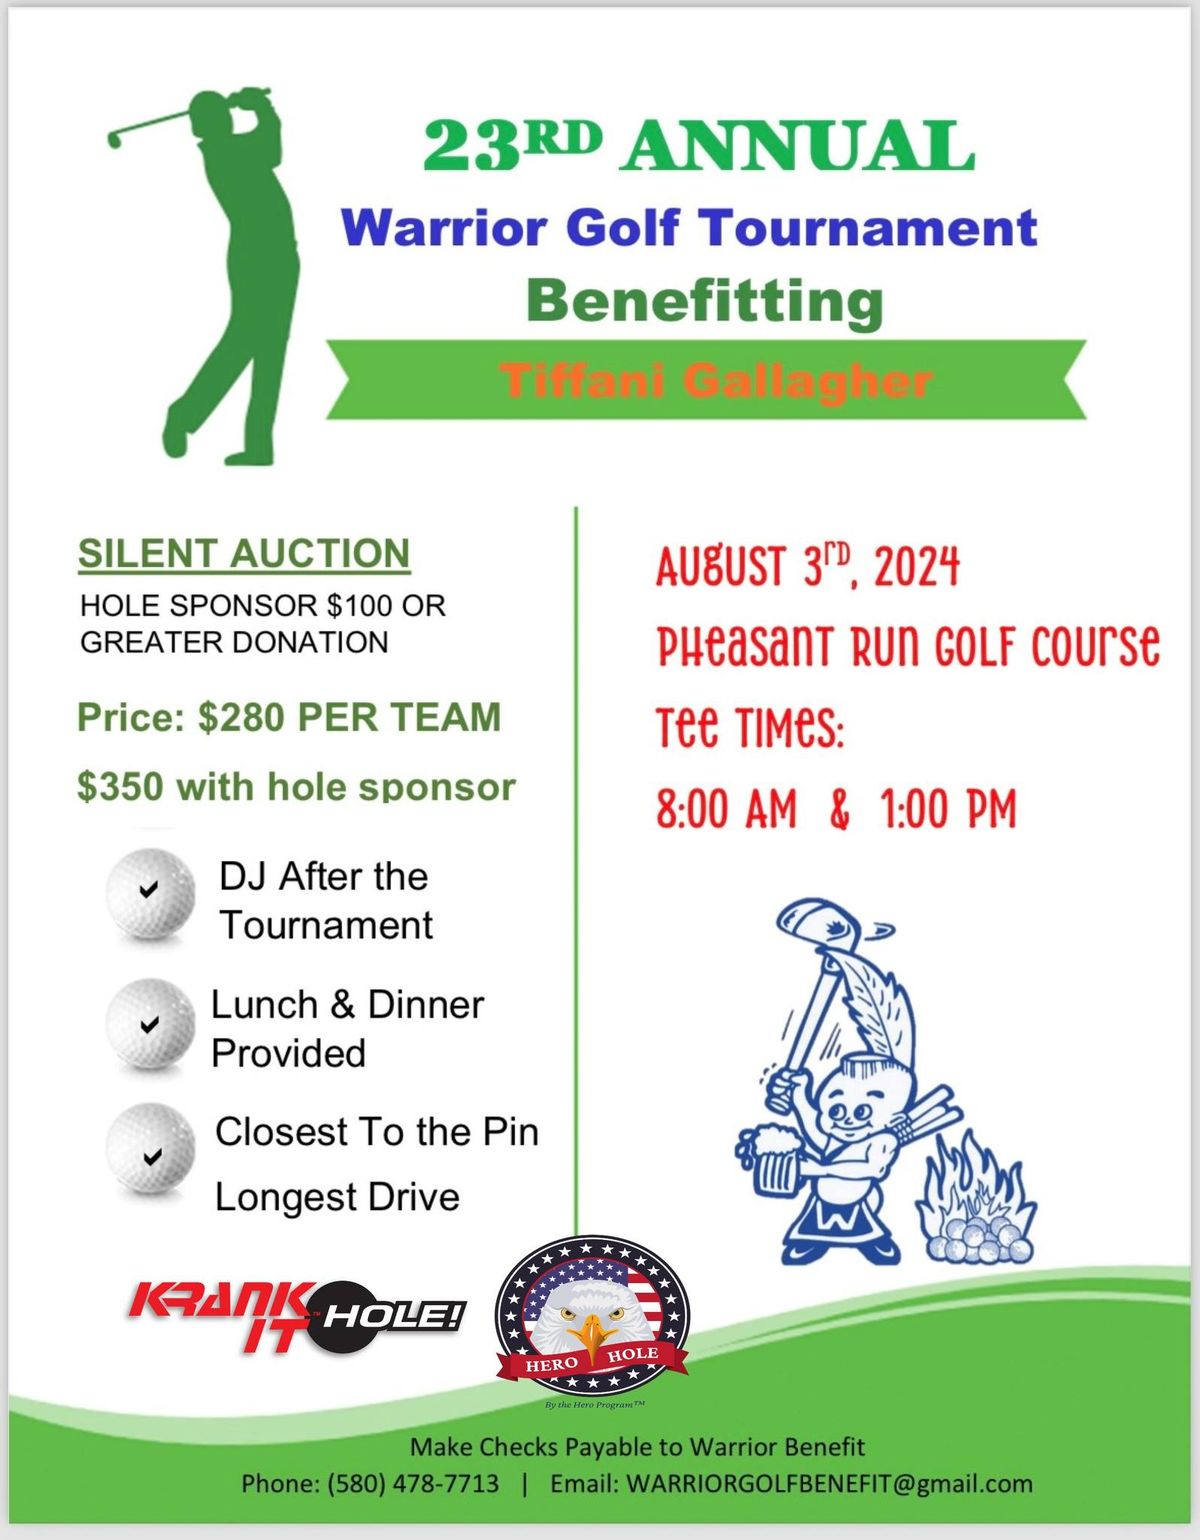 23rd Annual Warrior Golf Tournament Benefiting Tiffani Gallagher, PHEASANT RUN GOLF COURSE